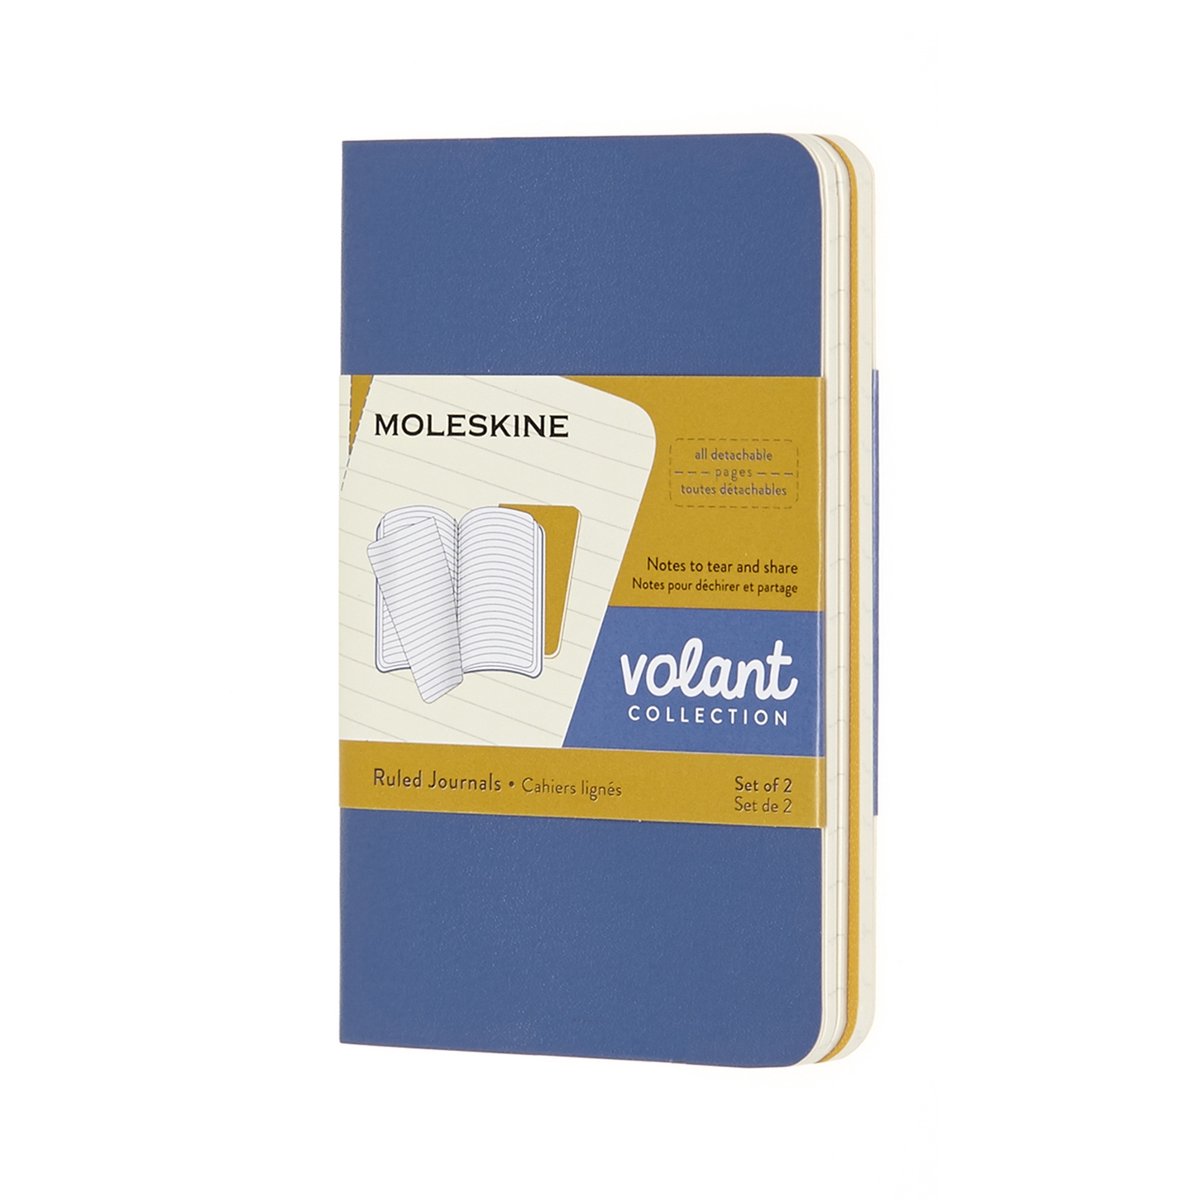 Moleskine Volant Journals - Extra Small - Gelinieerd - Blauw/Geel